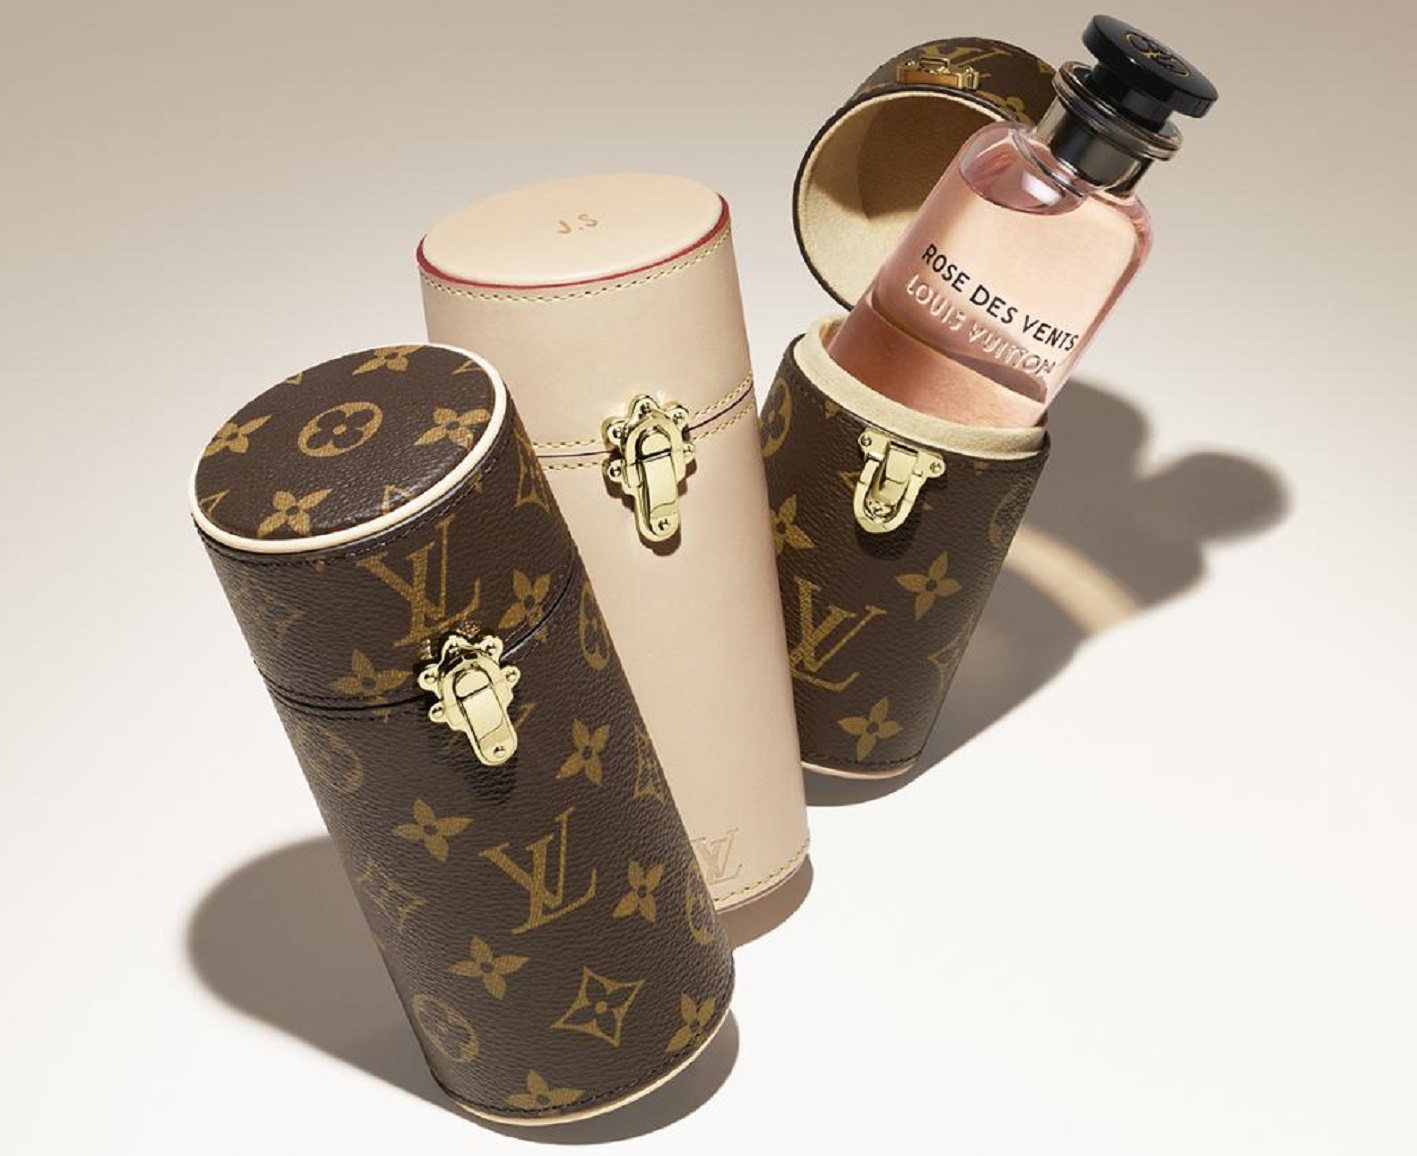 Louis Vuitton wraca po 70 latach na rynek dóbr luksusowych z nowymi  perfumami 